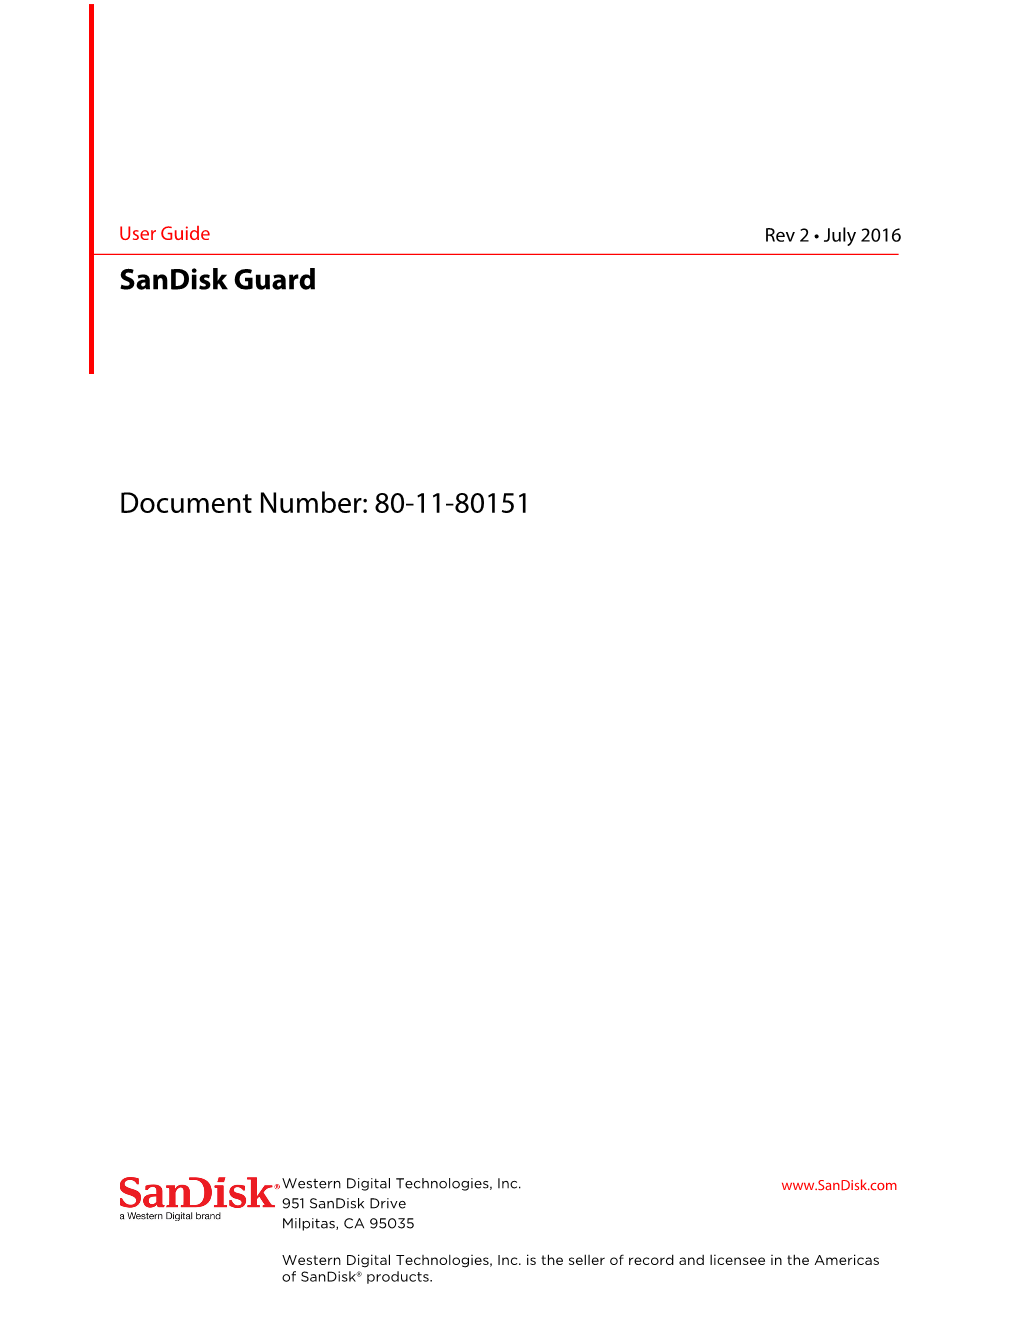 Sandisk Guard Document Number: 80-11-80151